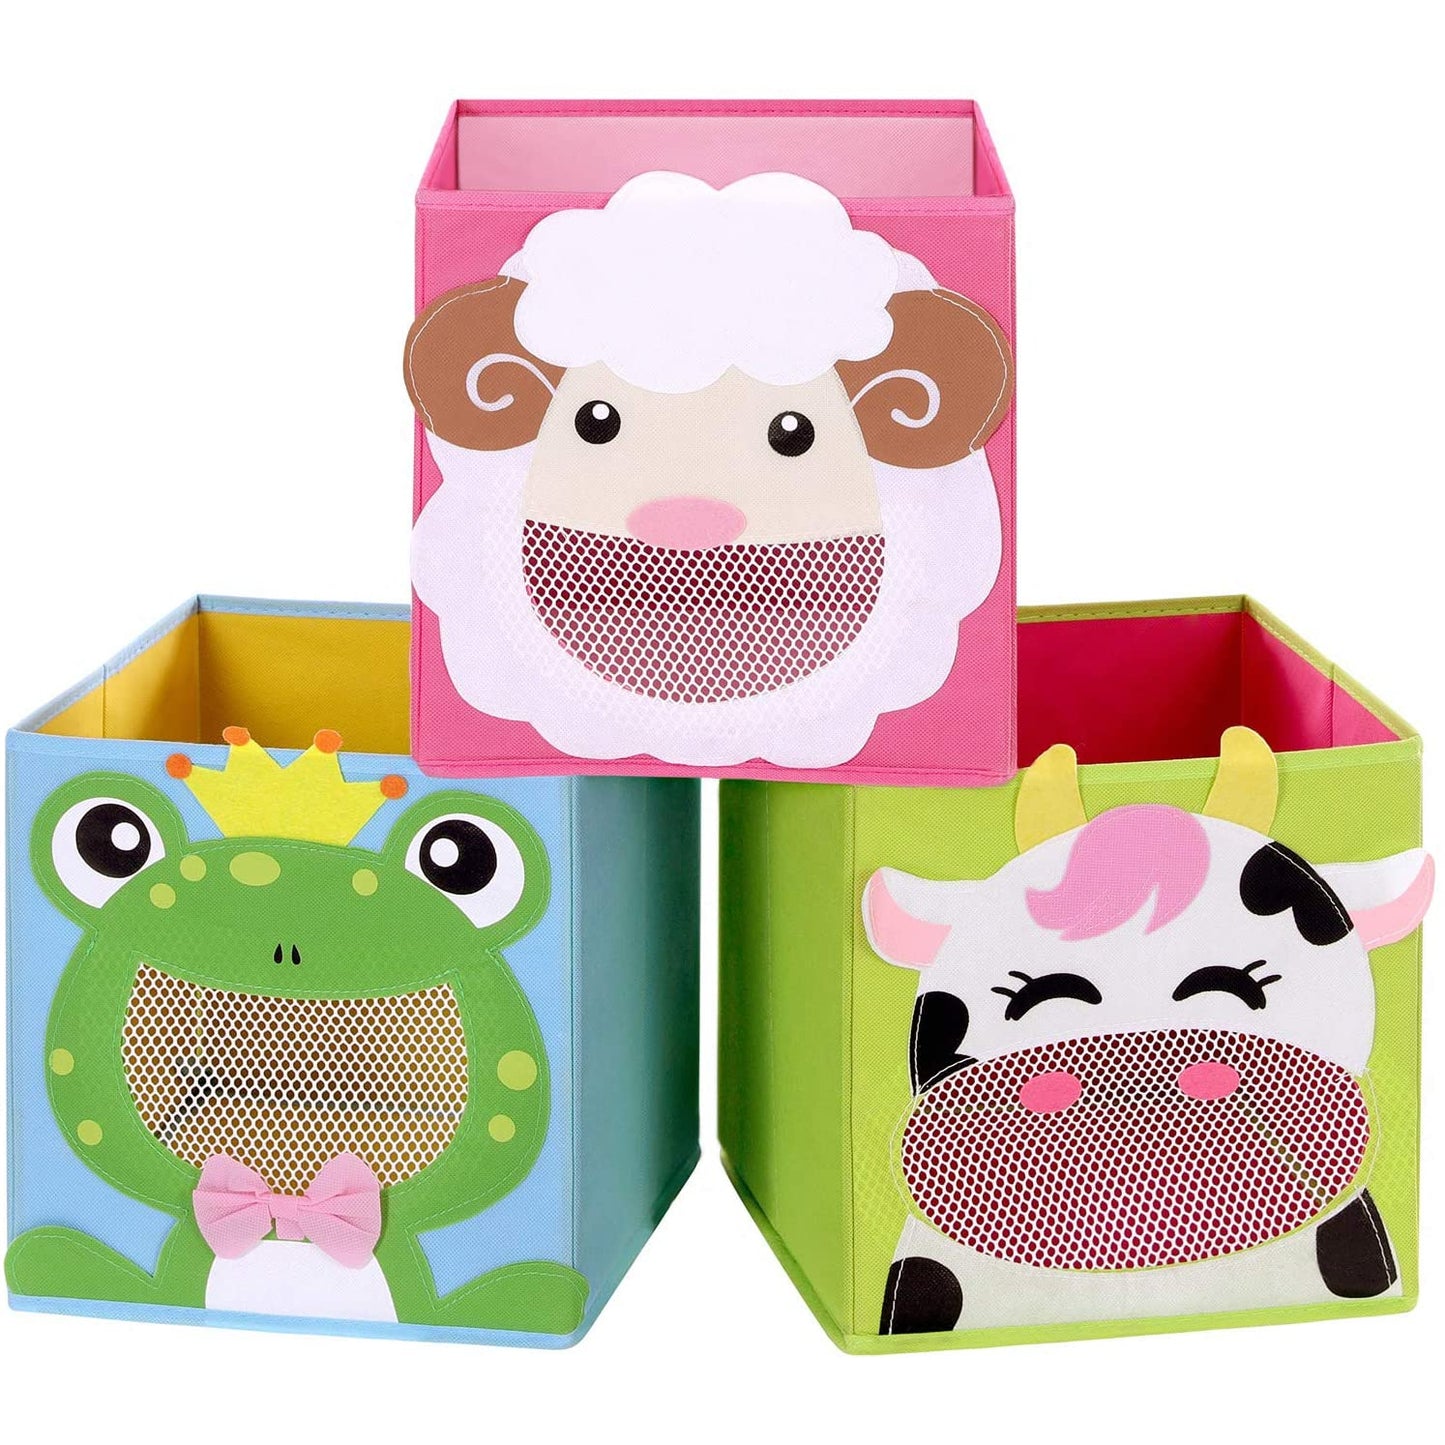 Boîtes de rangement Nancy's Caldwell - Lot de 3 - Organisateur de jouets - Boîtes pliantes - Cubes - Motifs animaux - Vert - Rose - Bleu - 27 x 27 x 27 cm